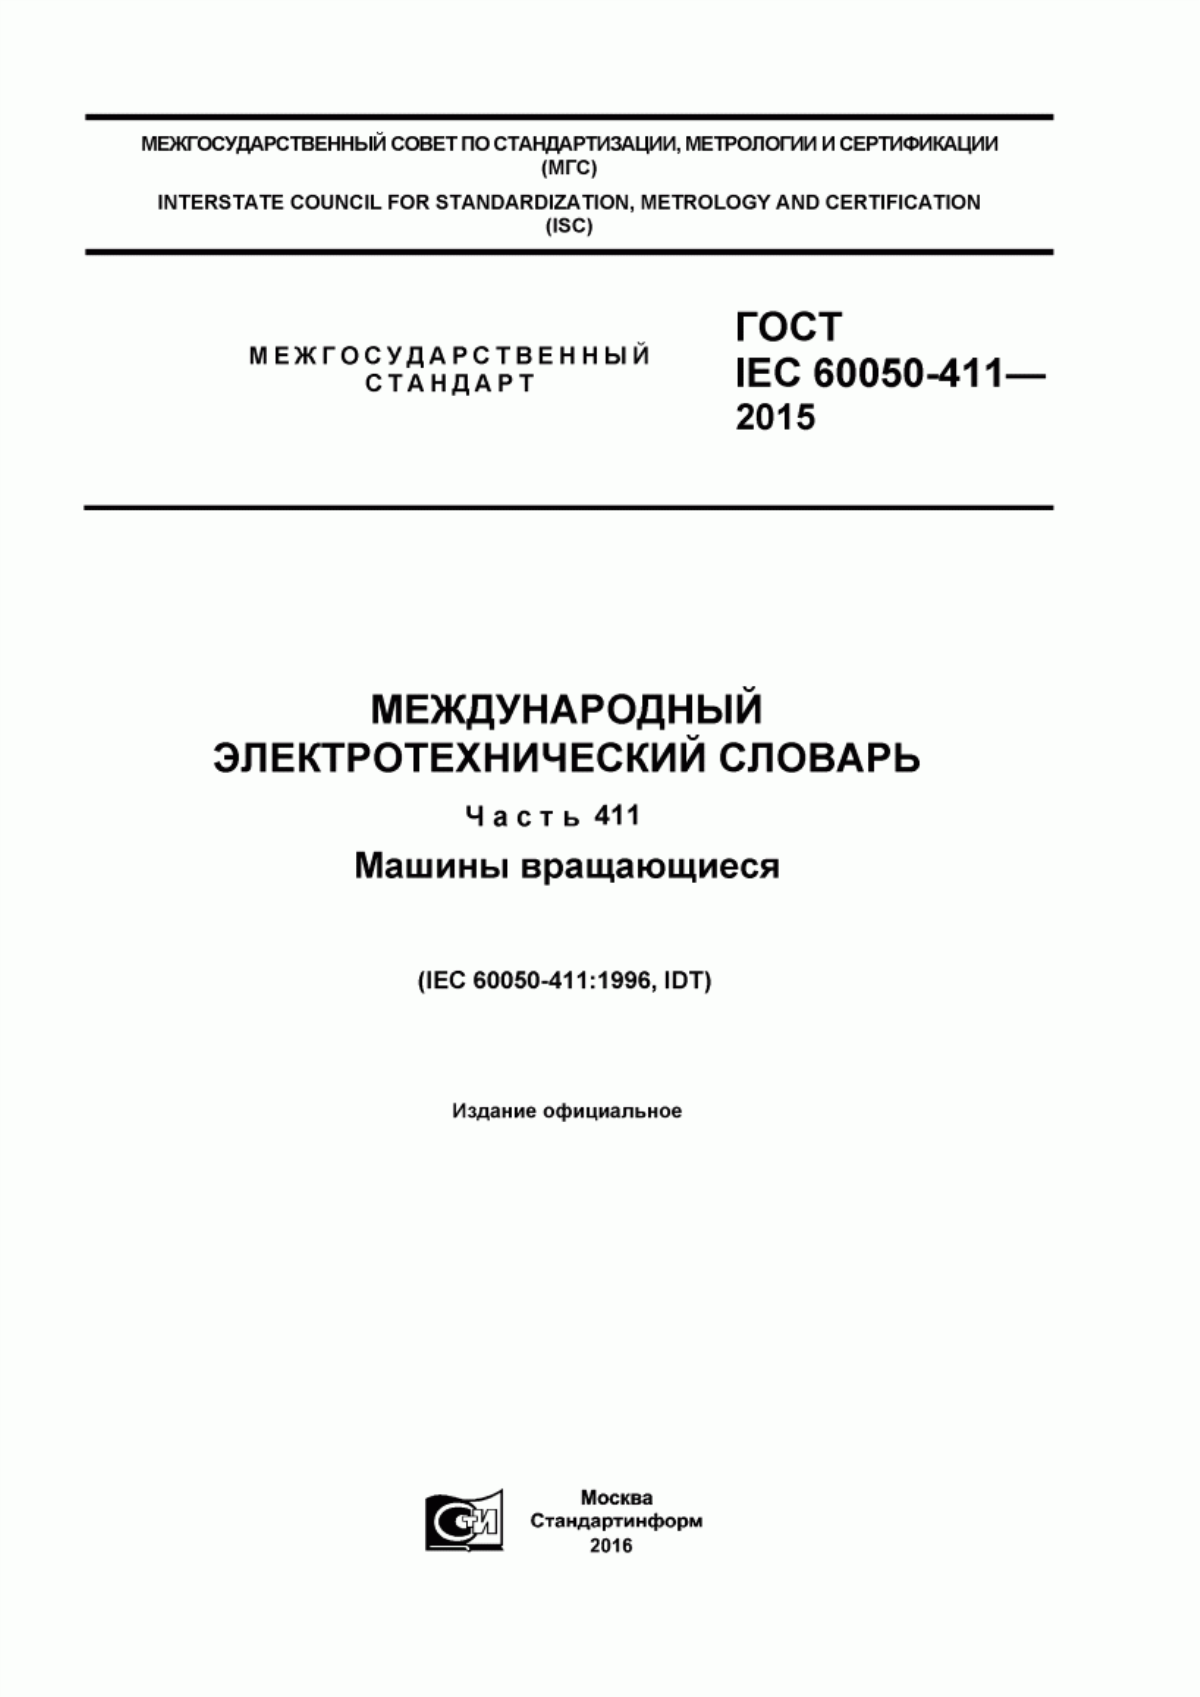 ГОСТ IEC 60050-411-2015 Международный электротехнический словарь. Часть 411. Машины вращающиеся